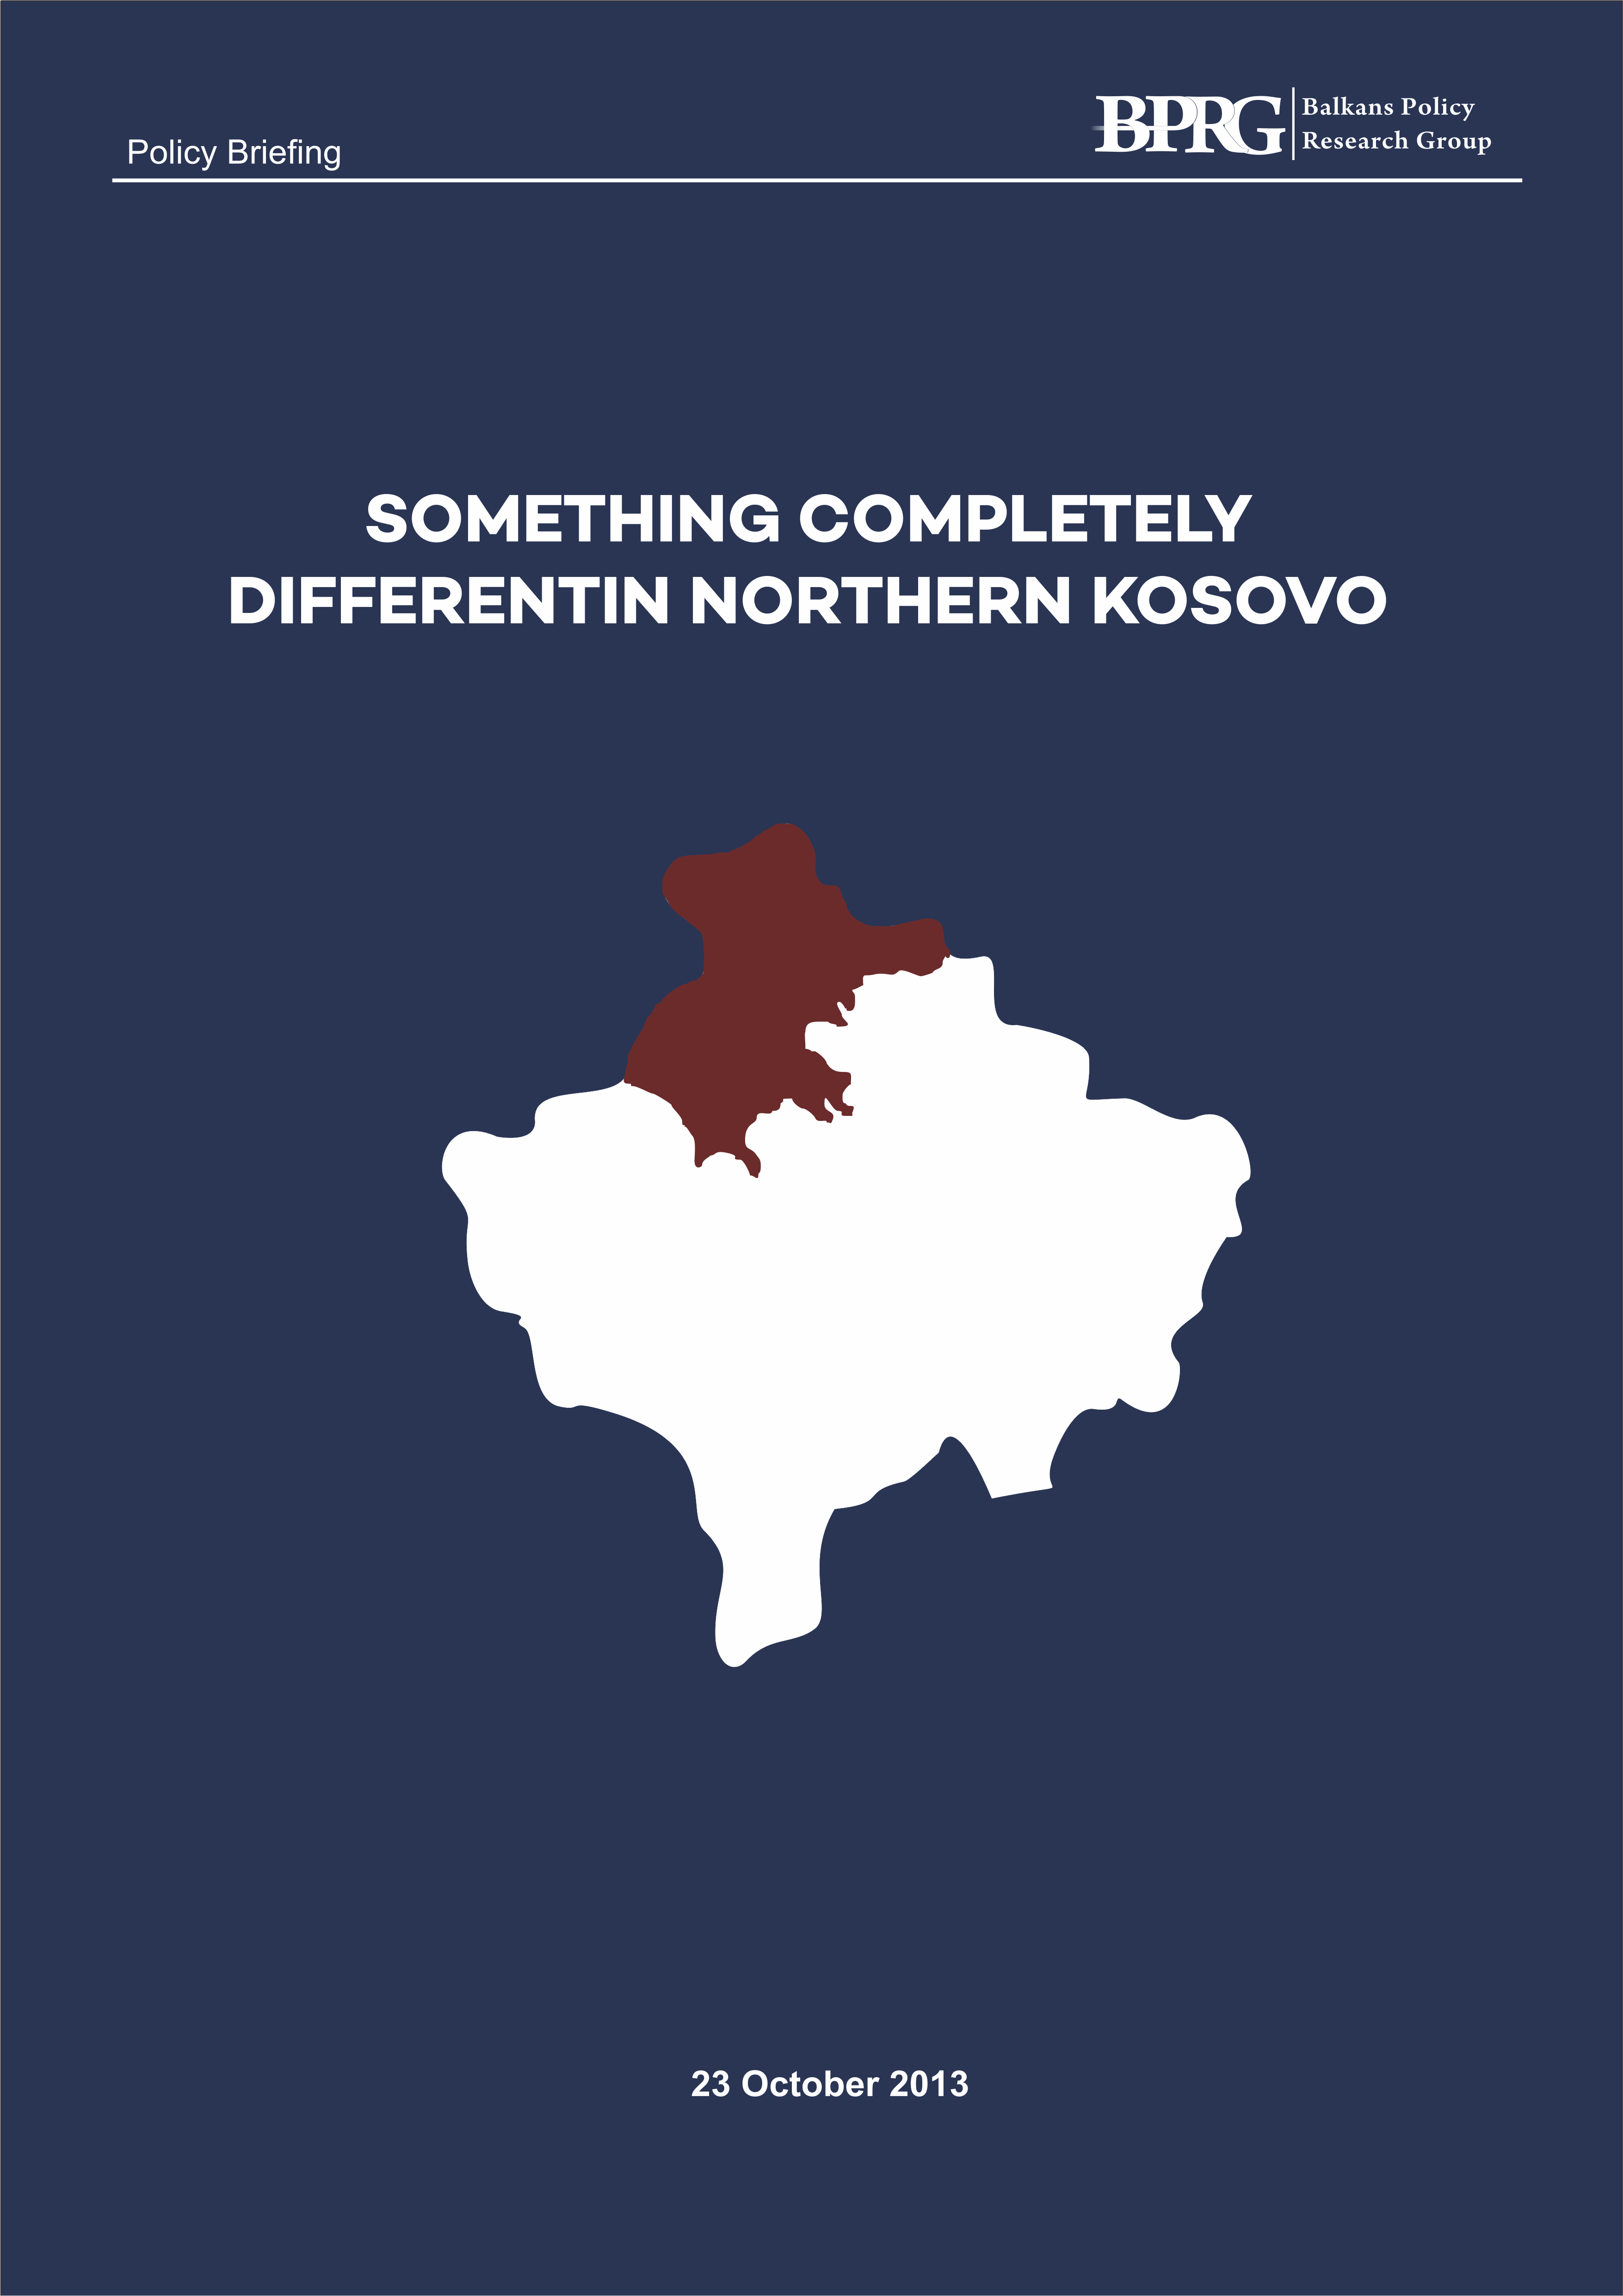 Diçka krejtësisht ndryshe për Kosovën Veriore